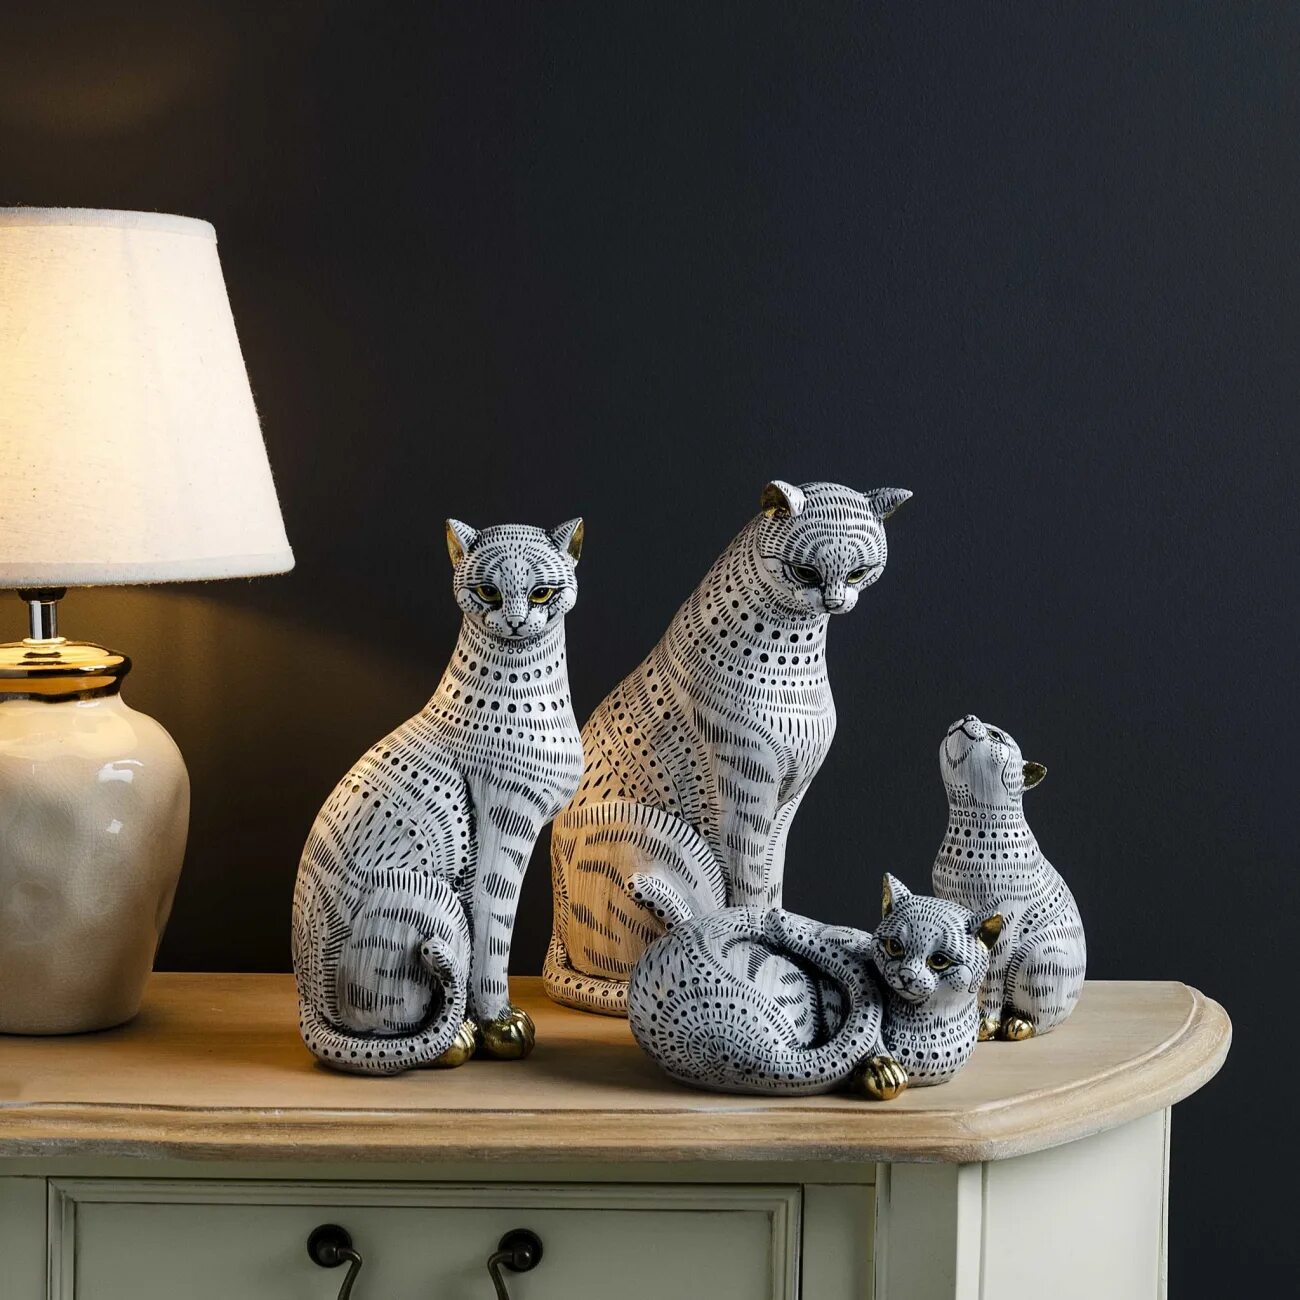 Cat dz201. Деревянные статуэтки кошек для интерьера. Модные статуэтки в интерьере. Статуэтки животных в интерьере гостиной. Необычные расцветки фигурок кошек.